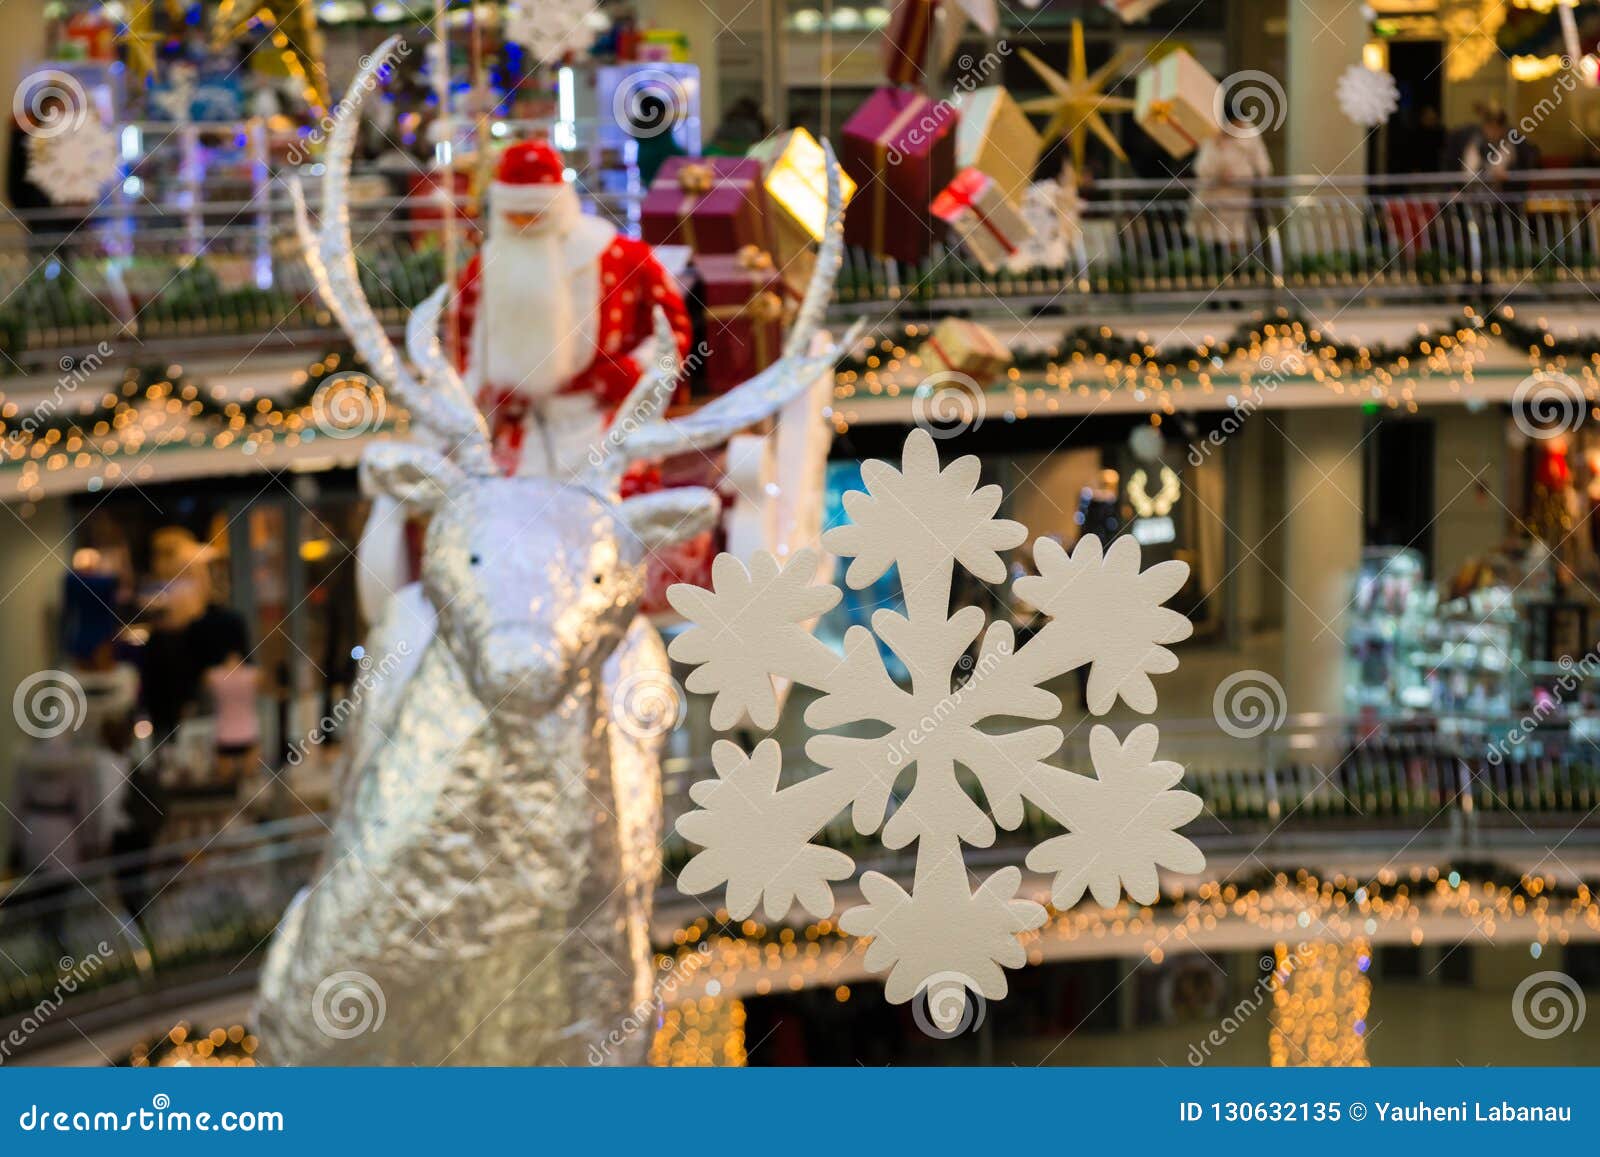 Weihnachtsmann mit Geschenken fliegt auf Renpferdeschlitten, Weihnachtskonzept. Schneeflockennahaufnahme gegen den Hintergrund von Santa Claus-Reiten auf Schlitten mit Geschenkverpacken, flacher DOF